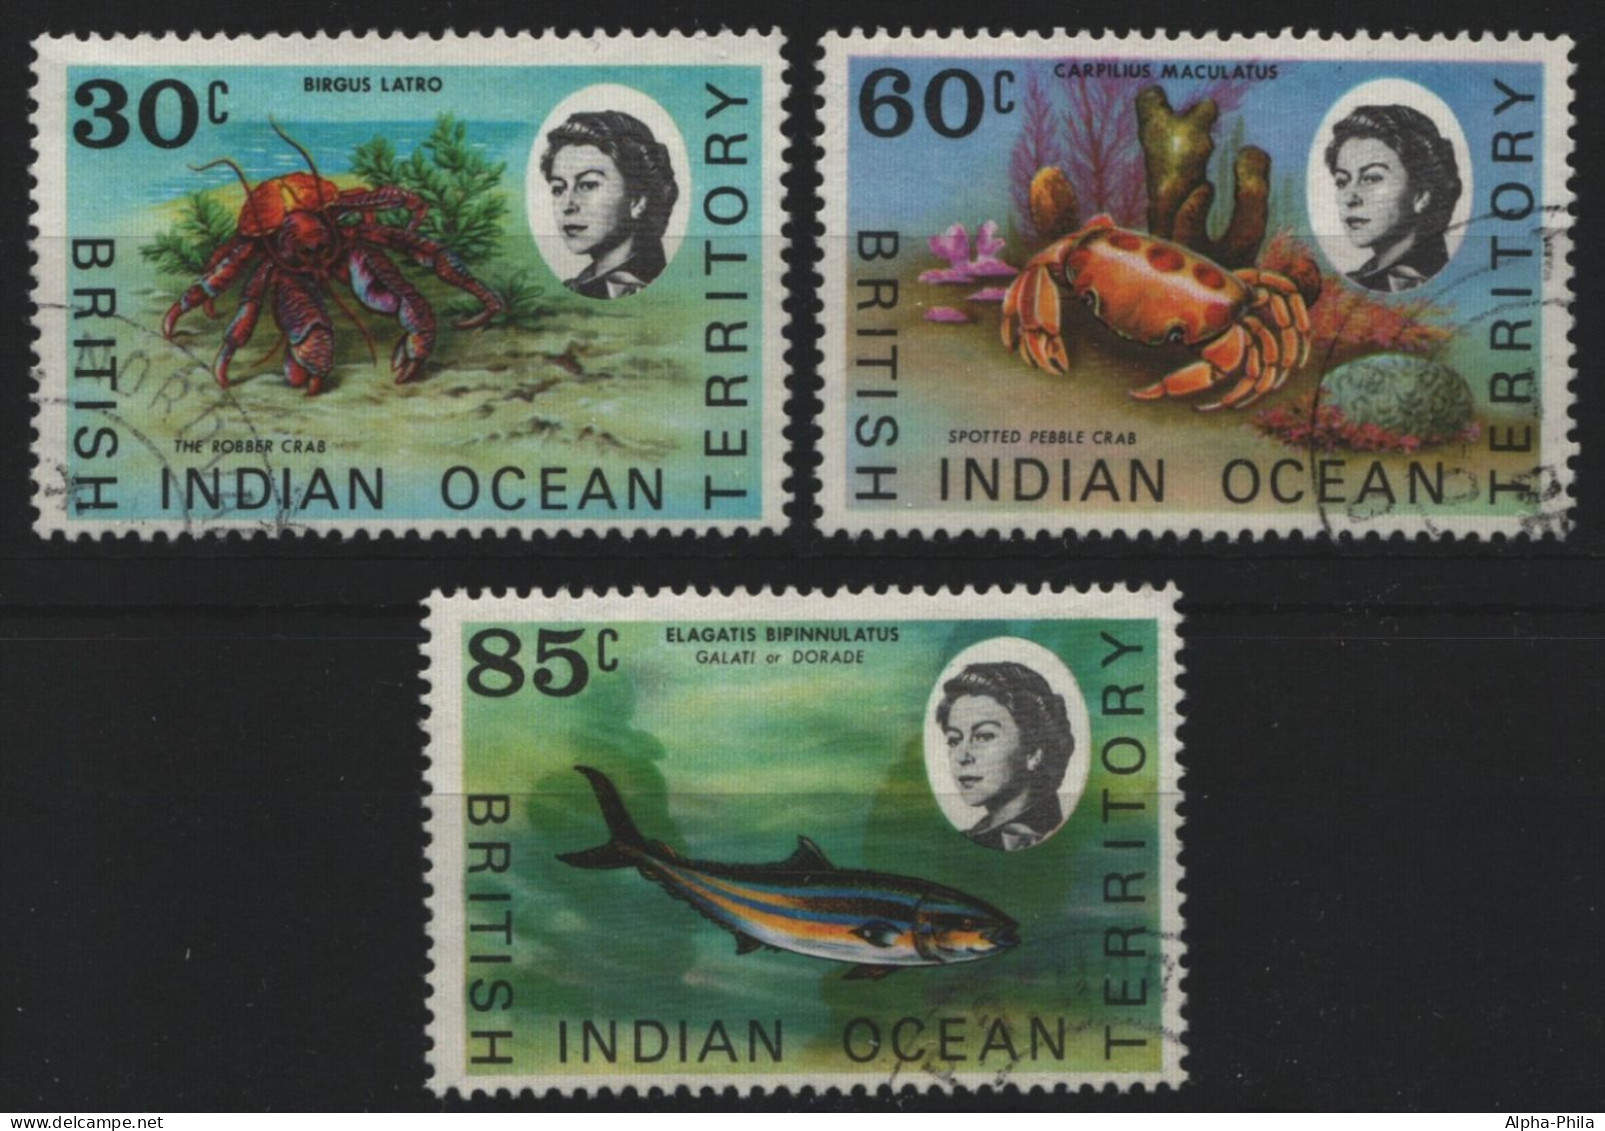 BIOT 1970 - Mi-Nr. 36-38 Gest / Used - Meeresleben / Marine Life - Territorio Británico Del Océano Índico